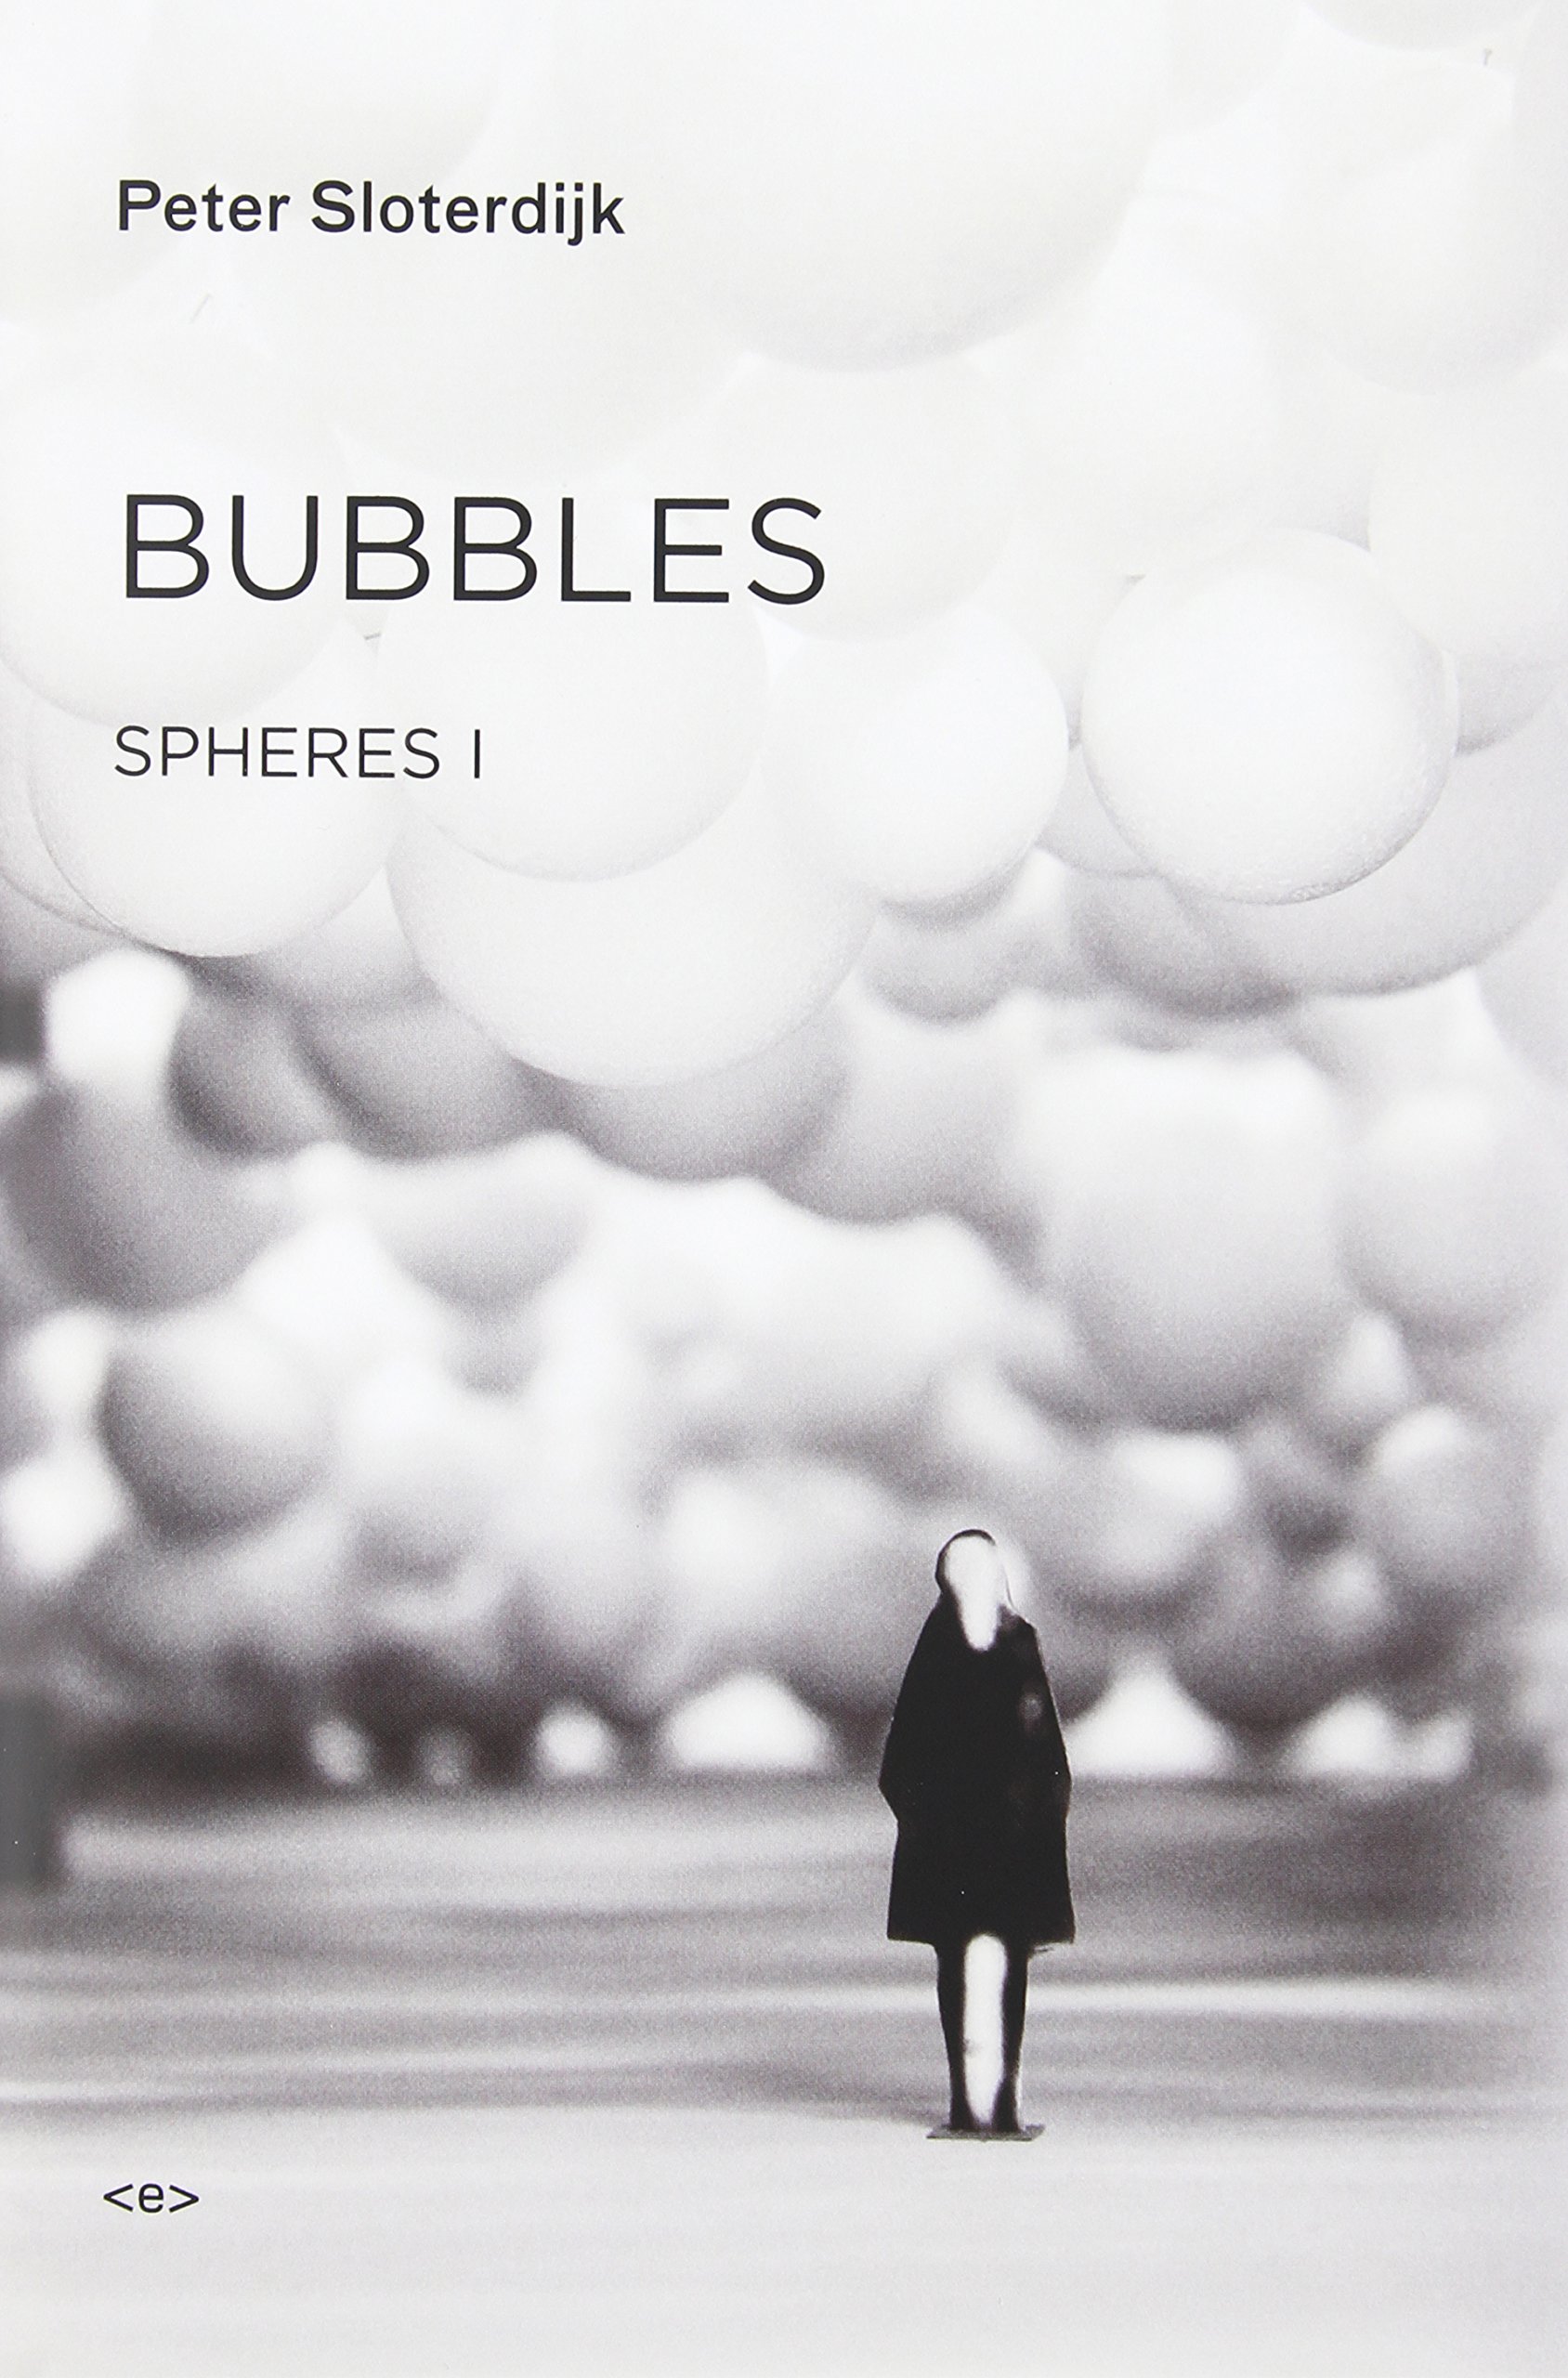 BOOK: Peter Sloterdijk, Bubbles: Spheres I